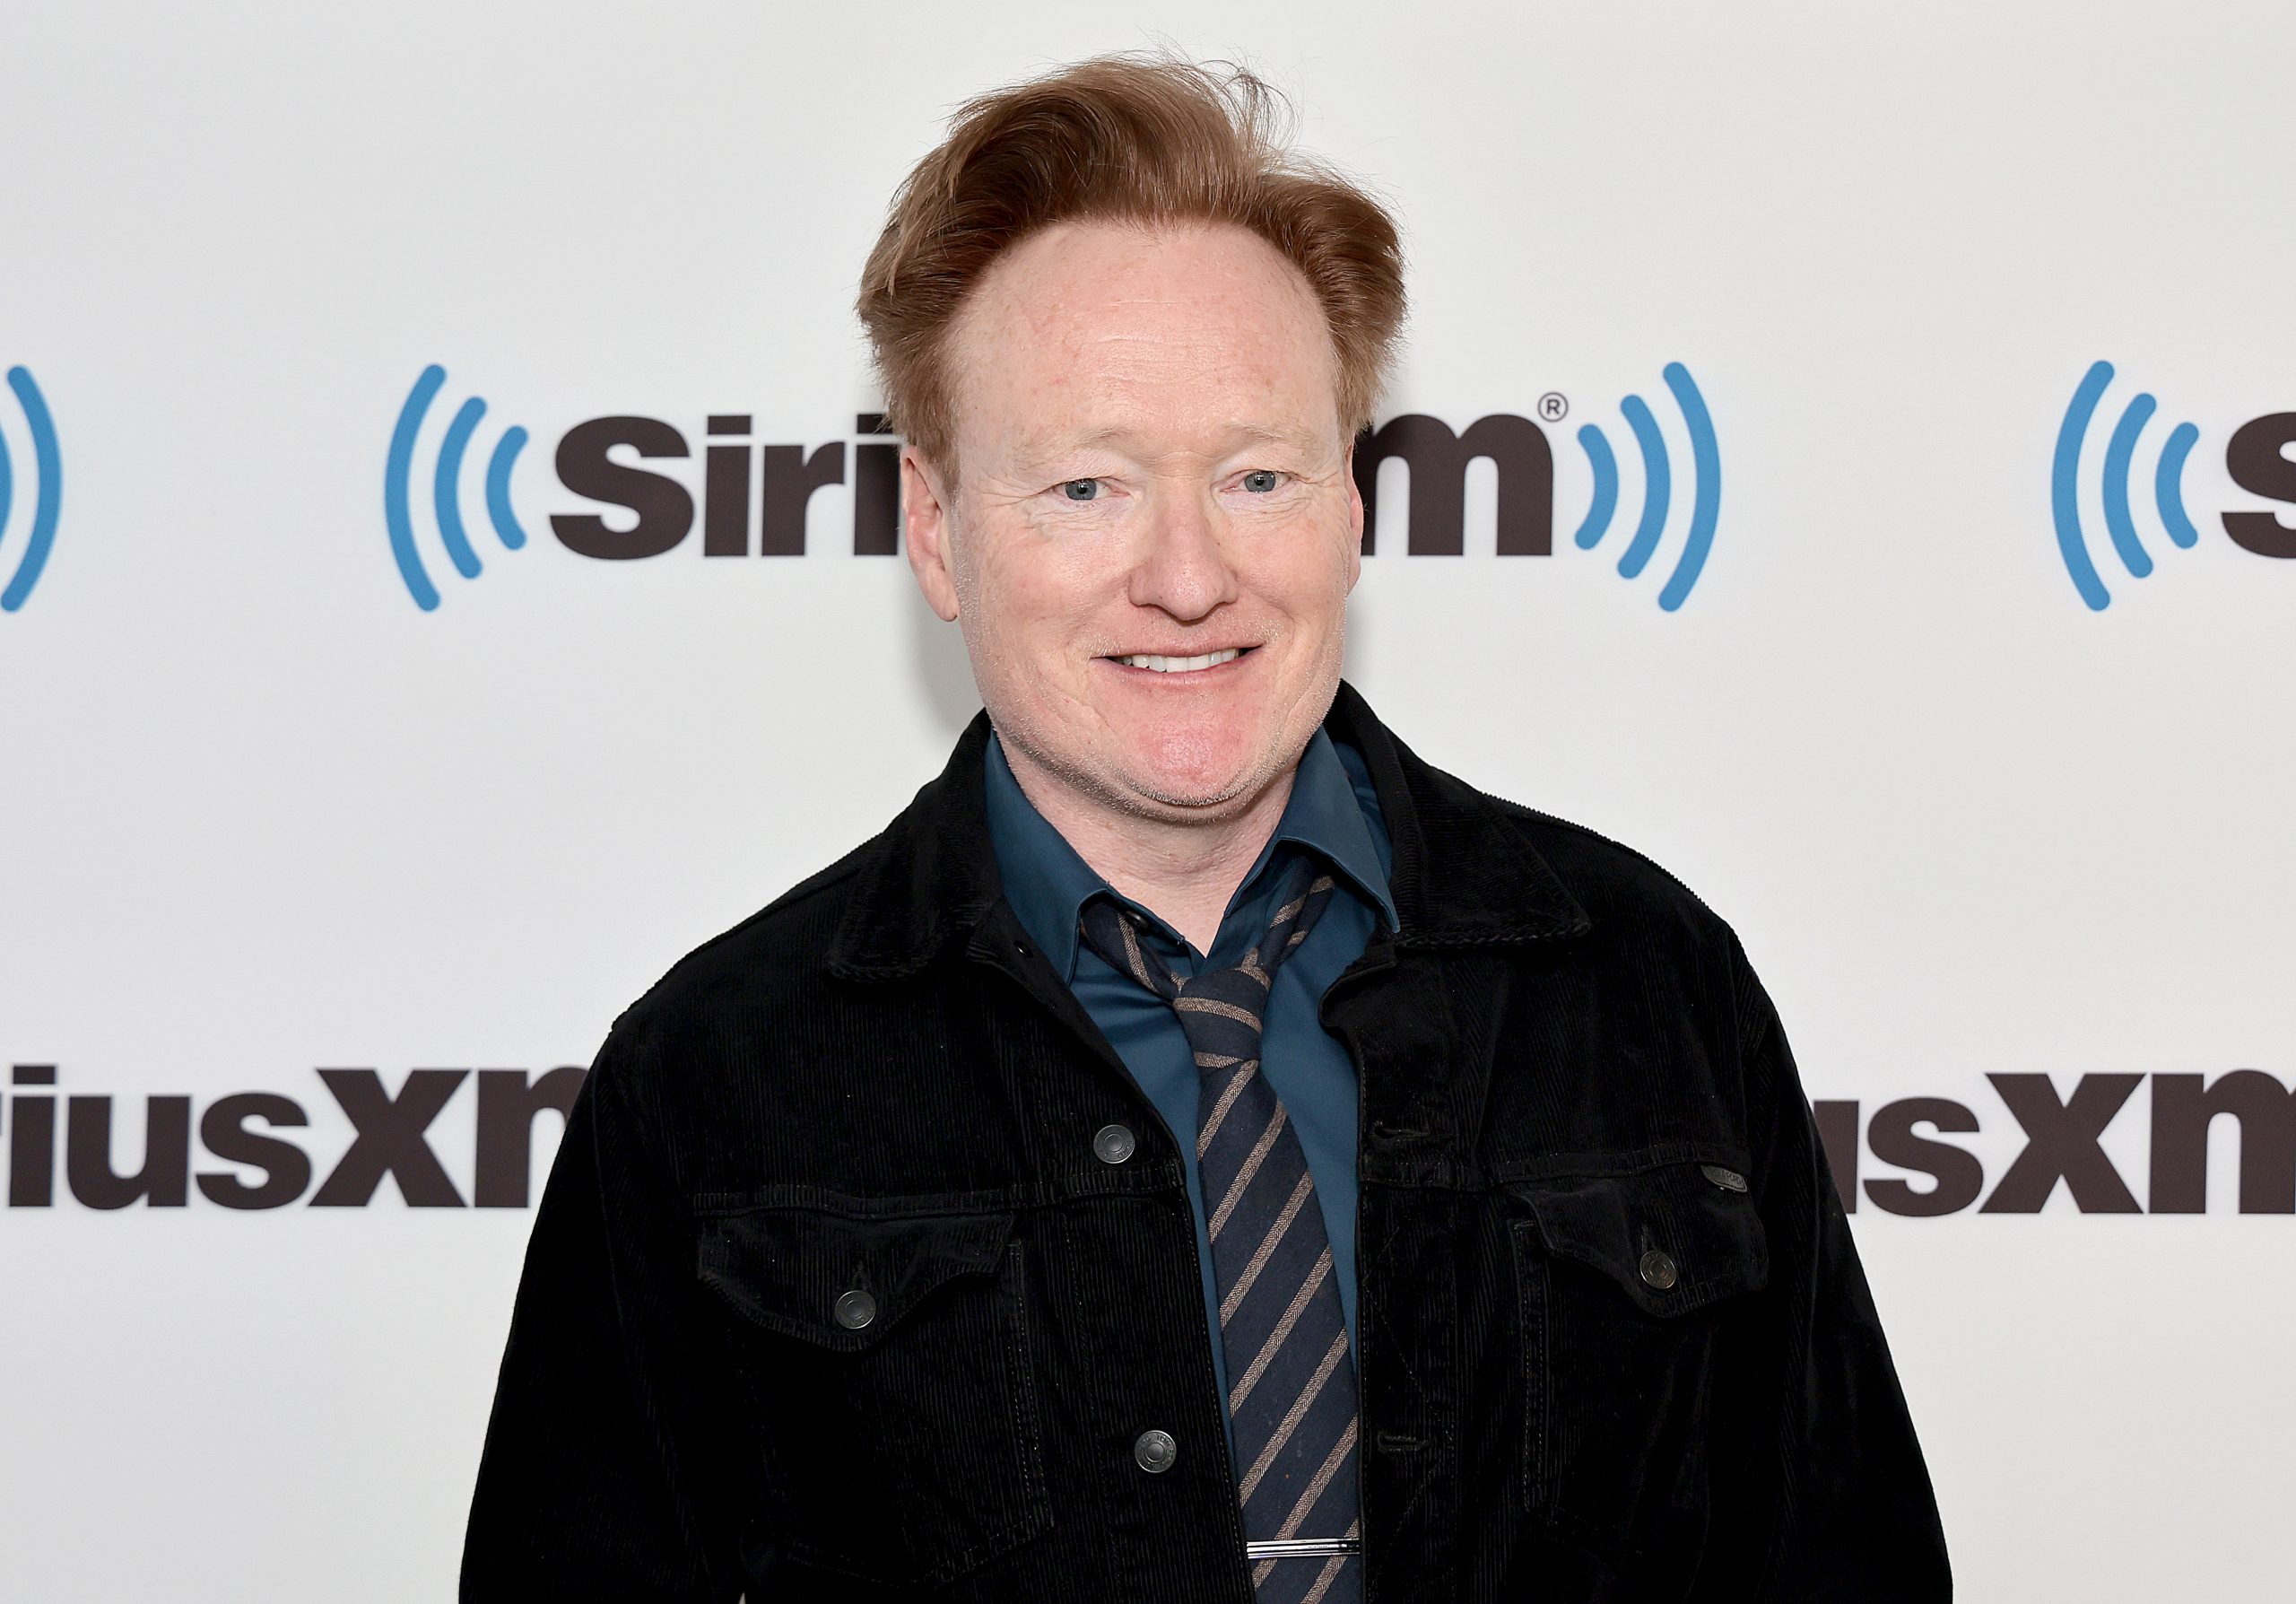 Conan O'Brien photo